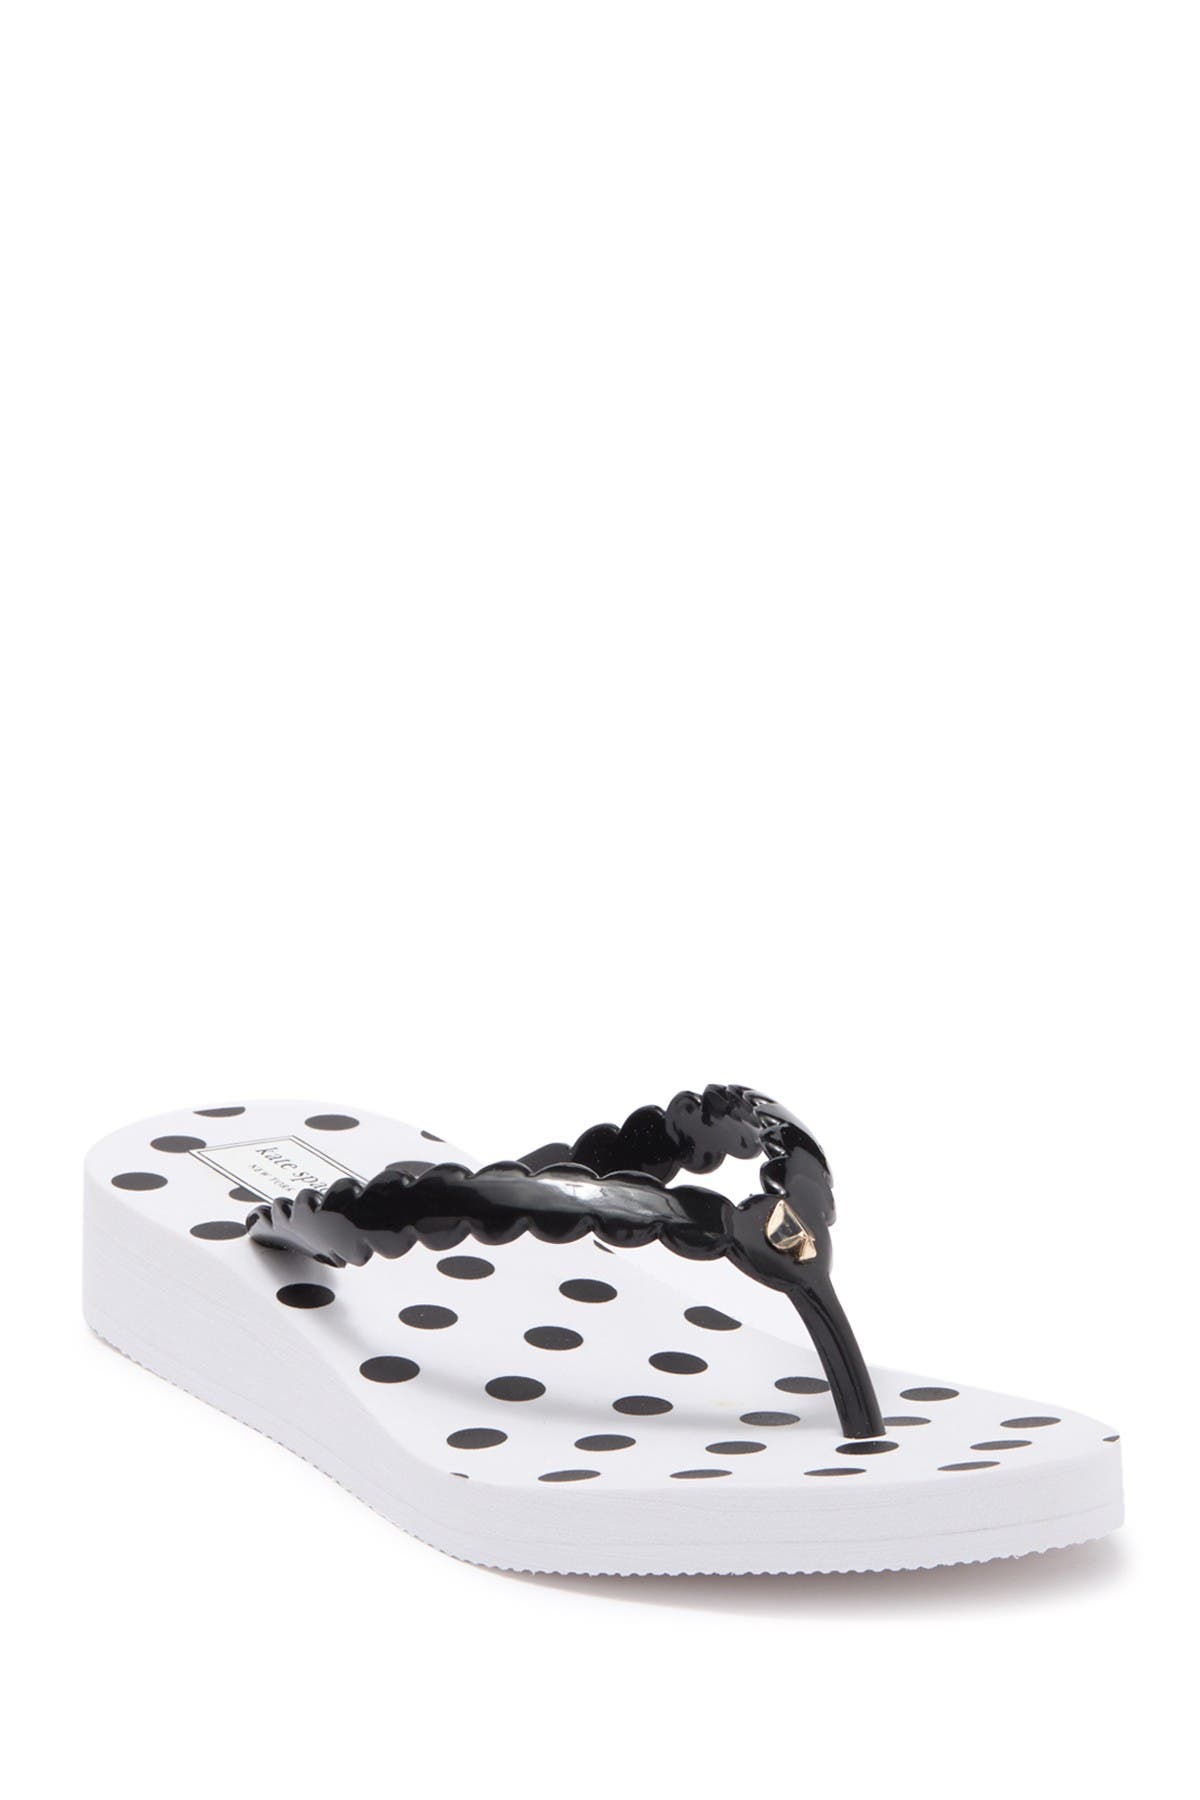 black platform flip flop sandals